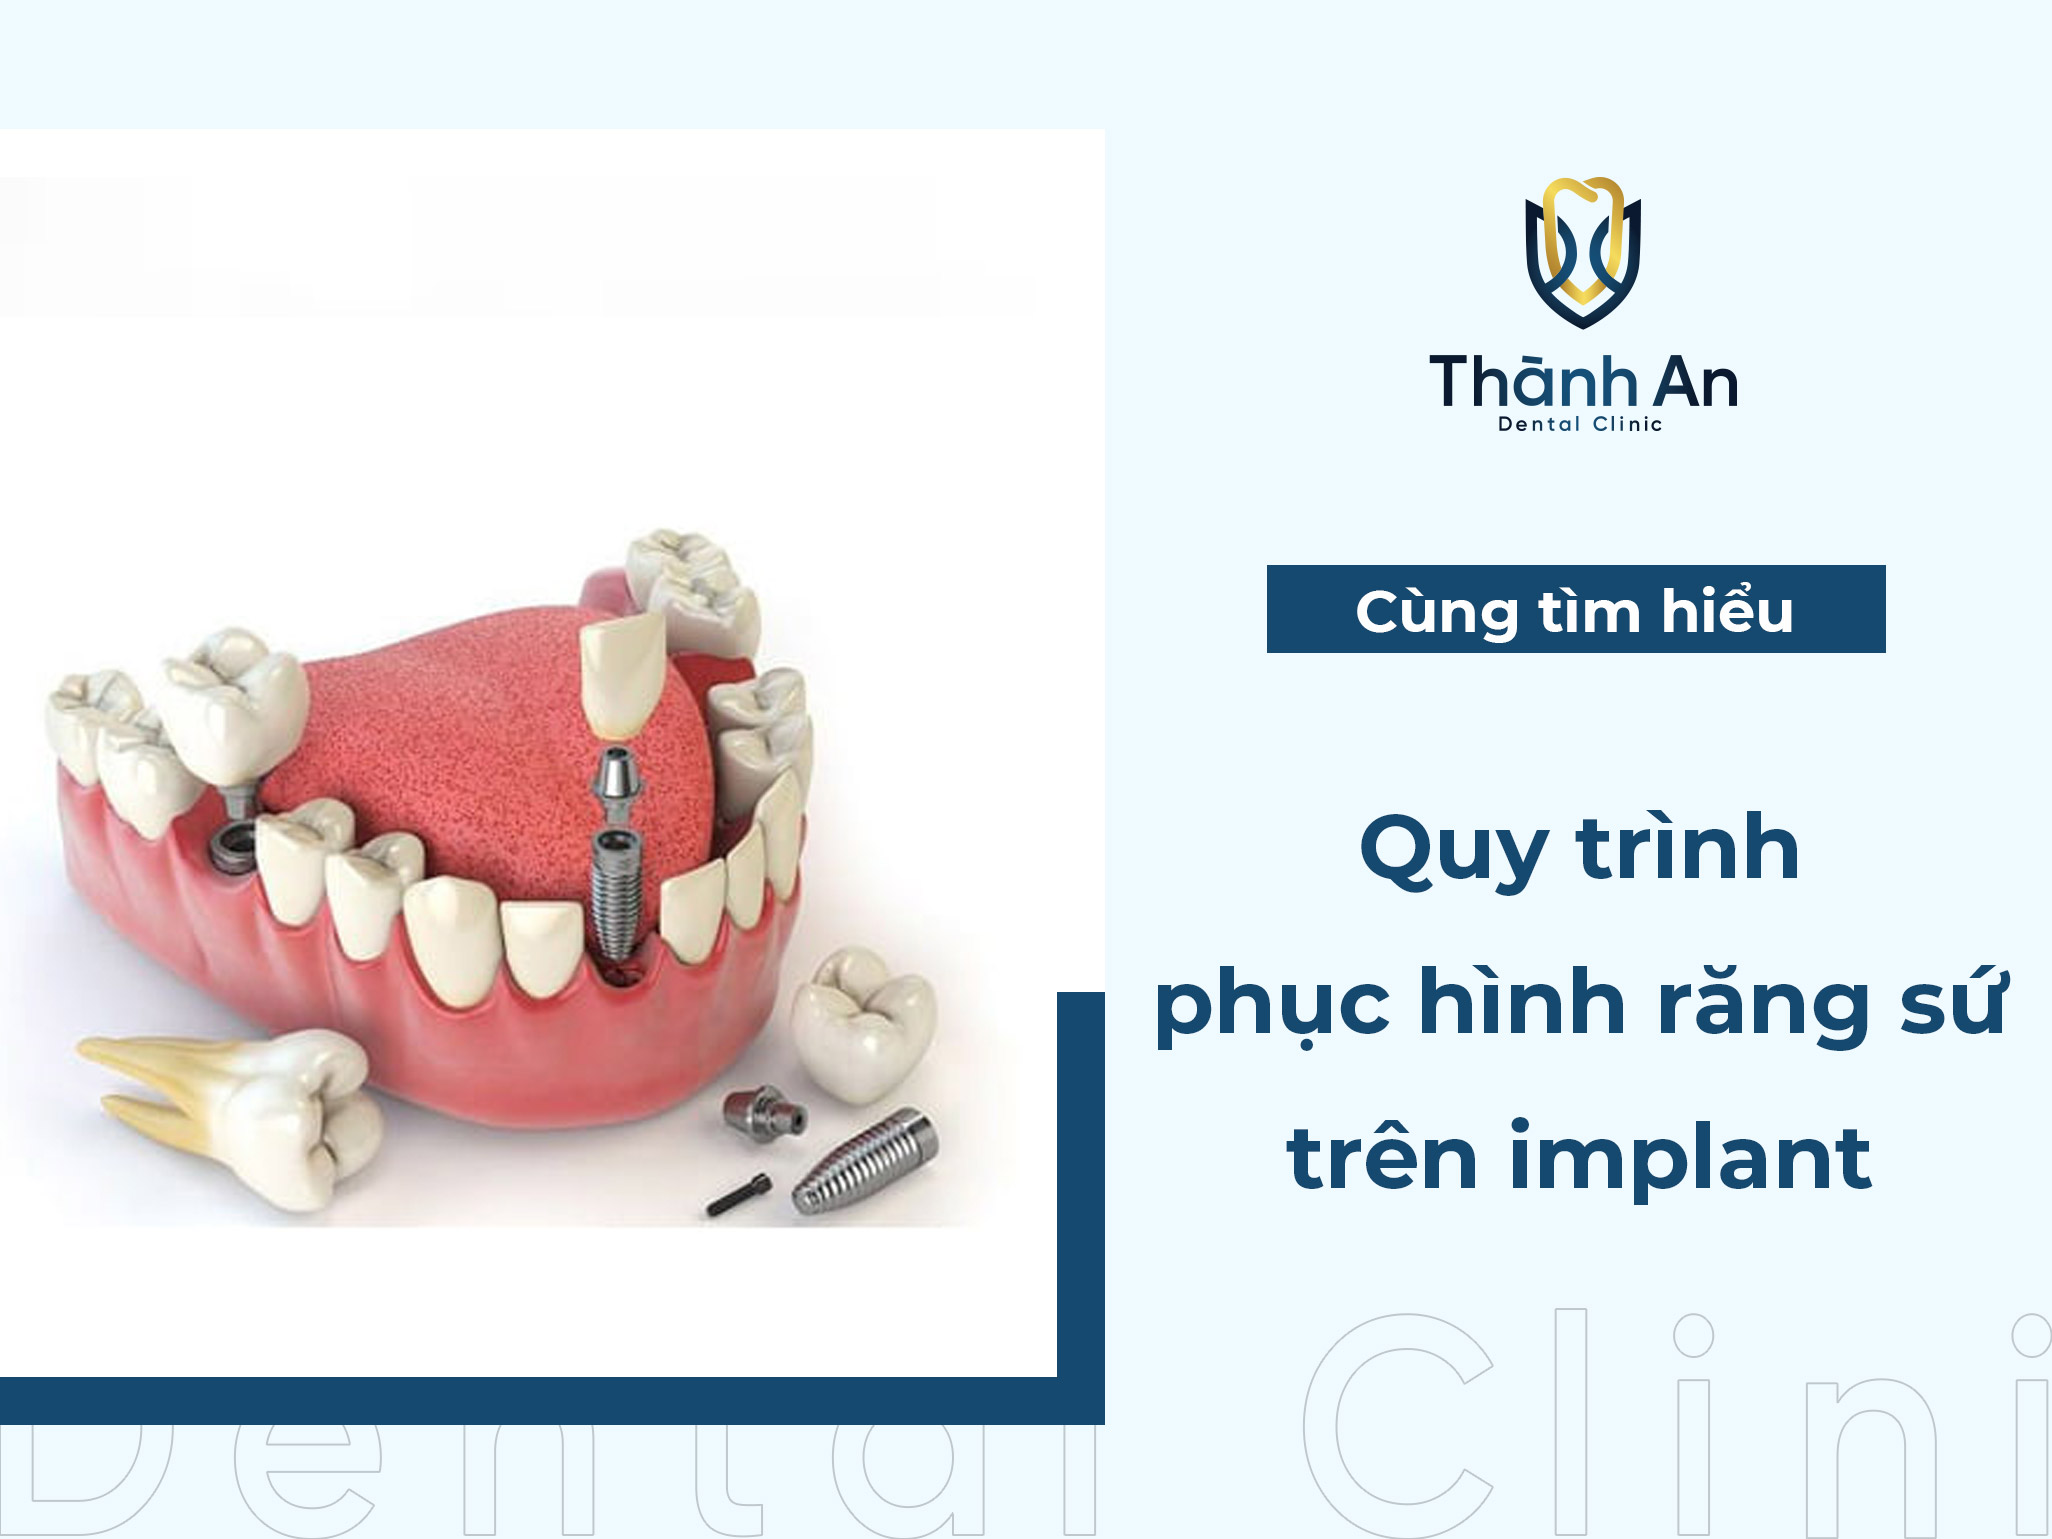 Phục hình răng sứ trên implant và quy trình thực hiện mới nhất